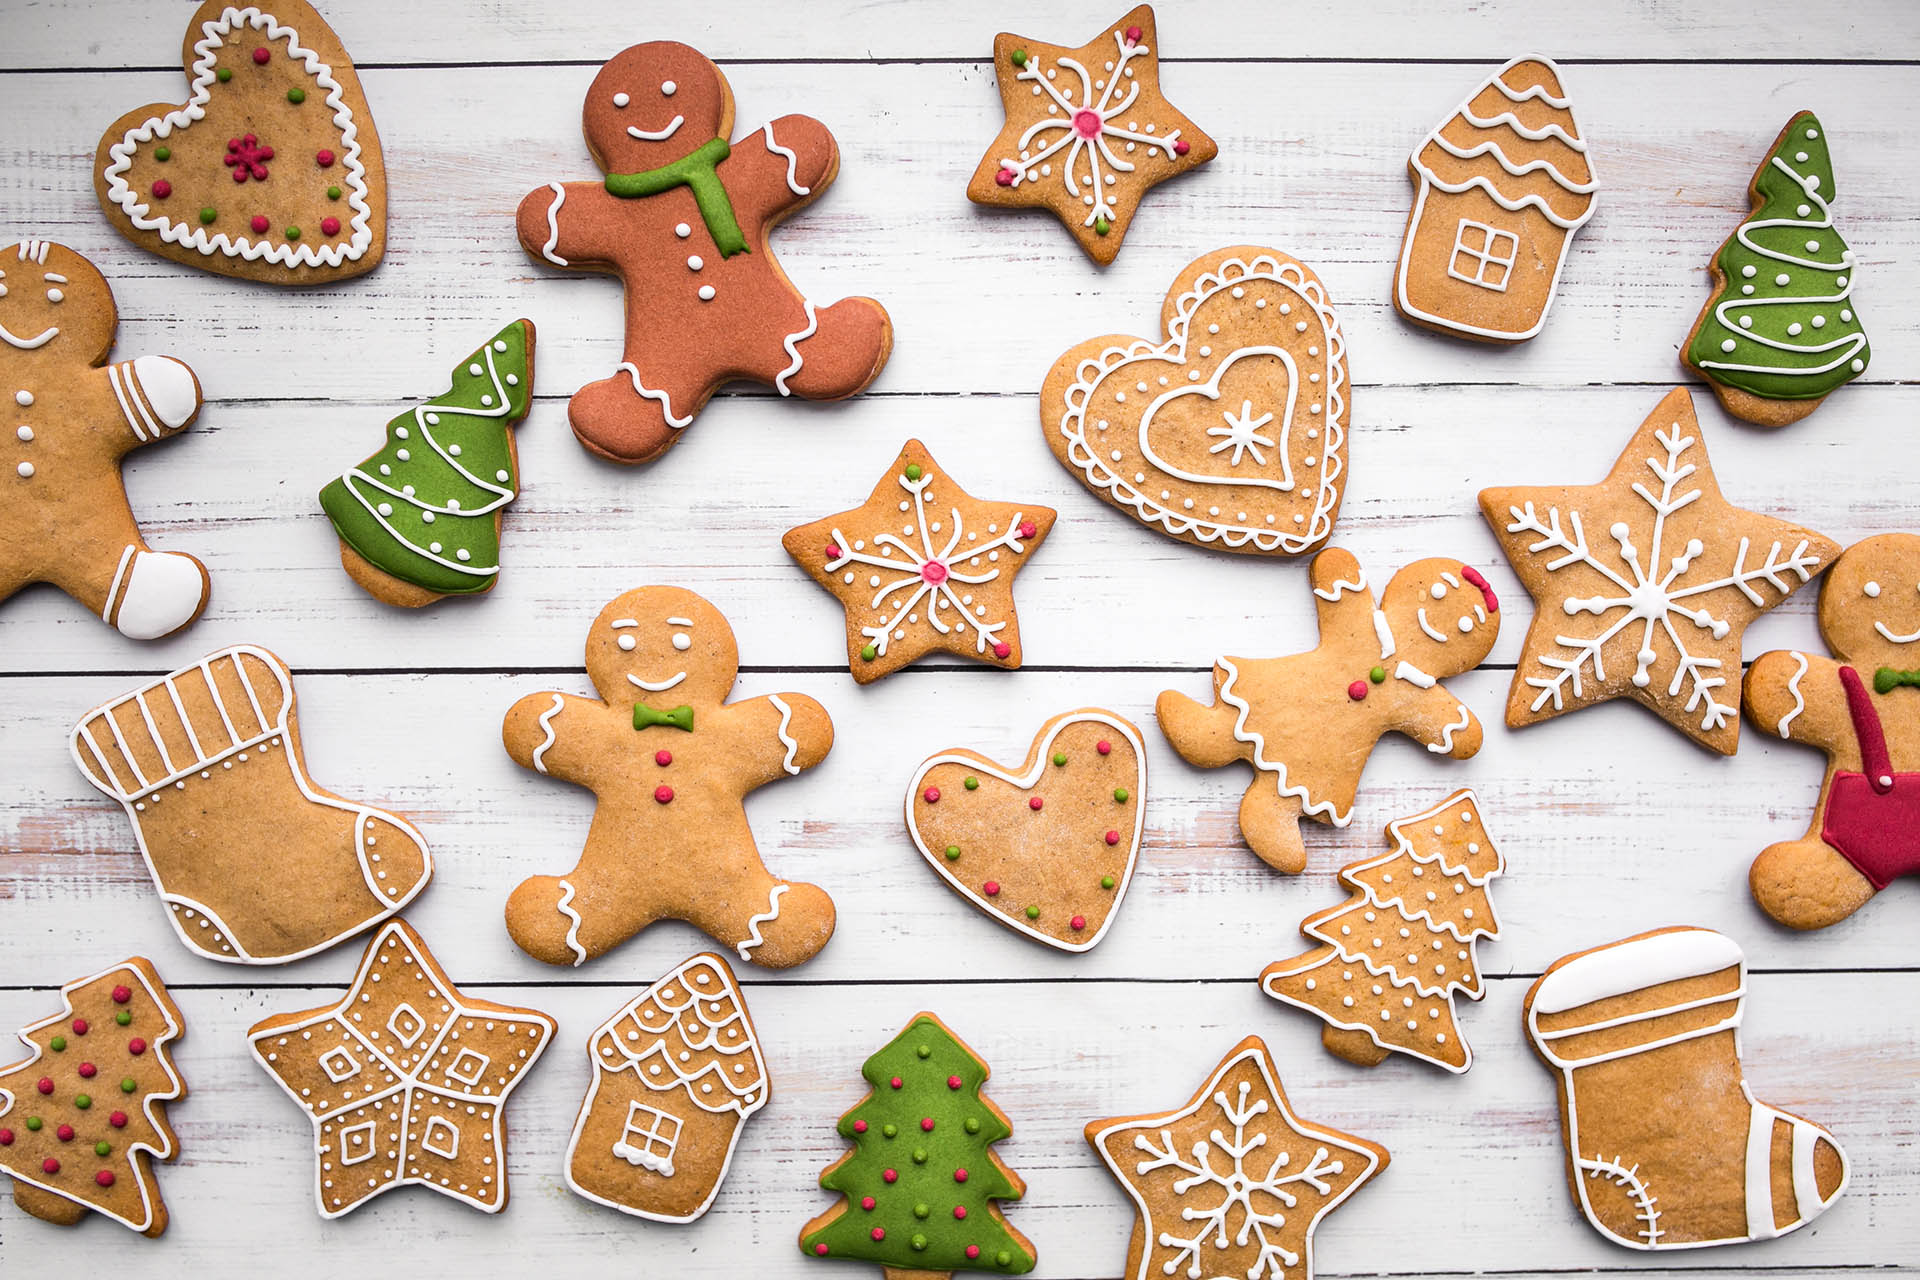 I biscotti di pan di zenzero, o gingerbread, portano la magia del Natale con le sue spezie e forme. Un momento di unione della famiglia, sono biscotti che spesso vengono donati agli amici e ai propri cari.